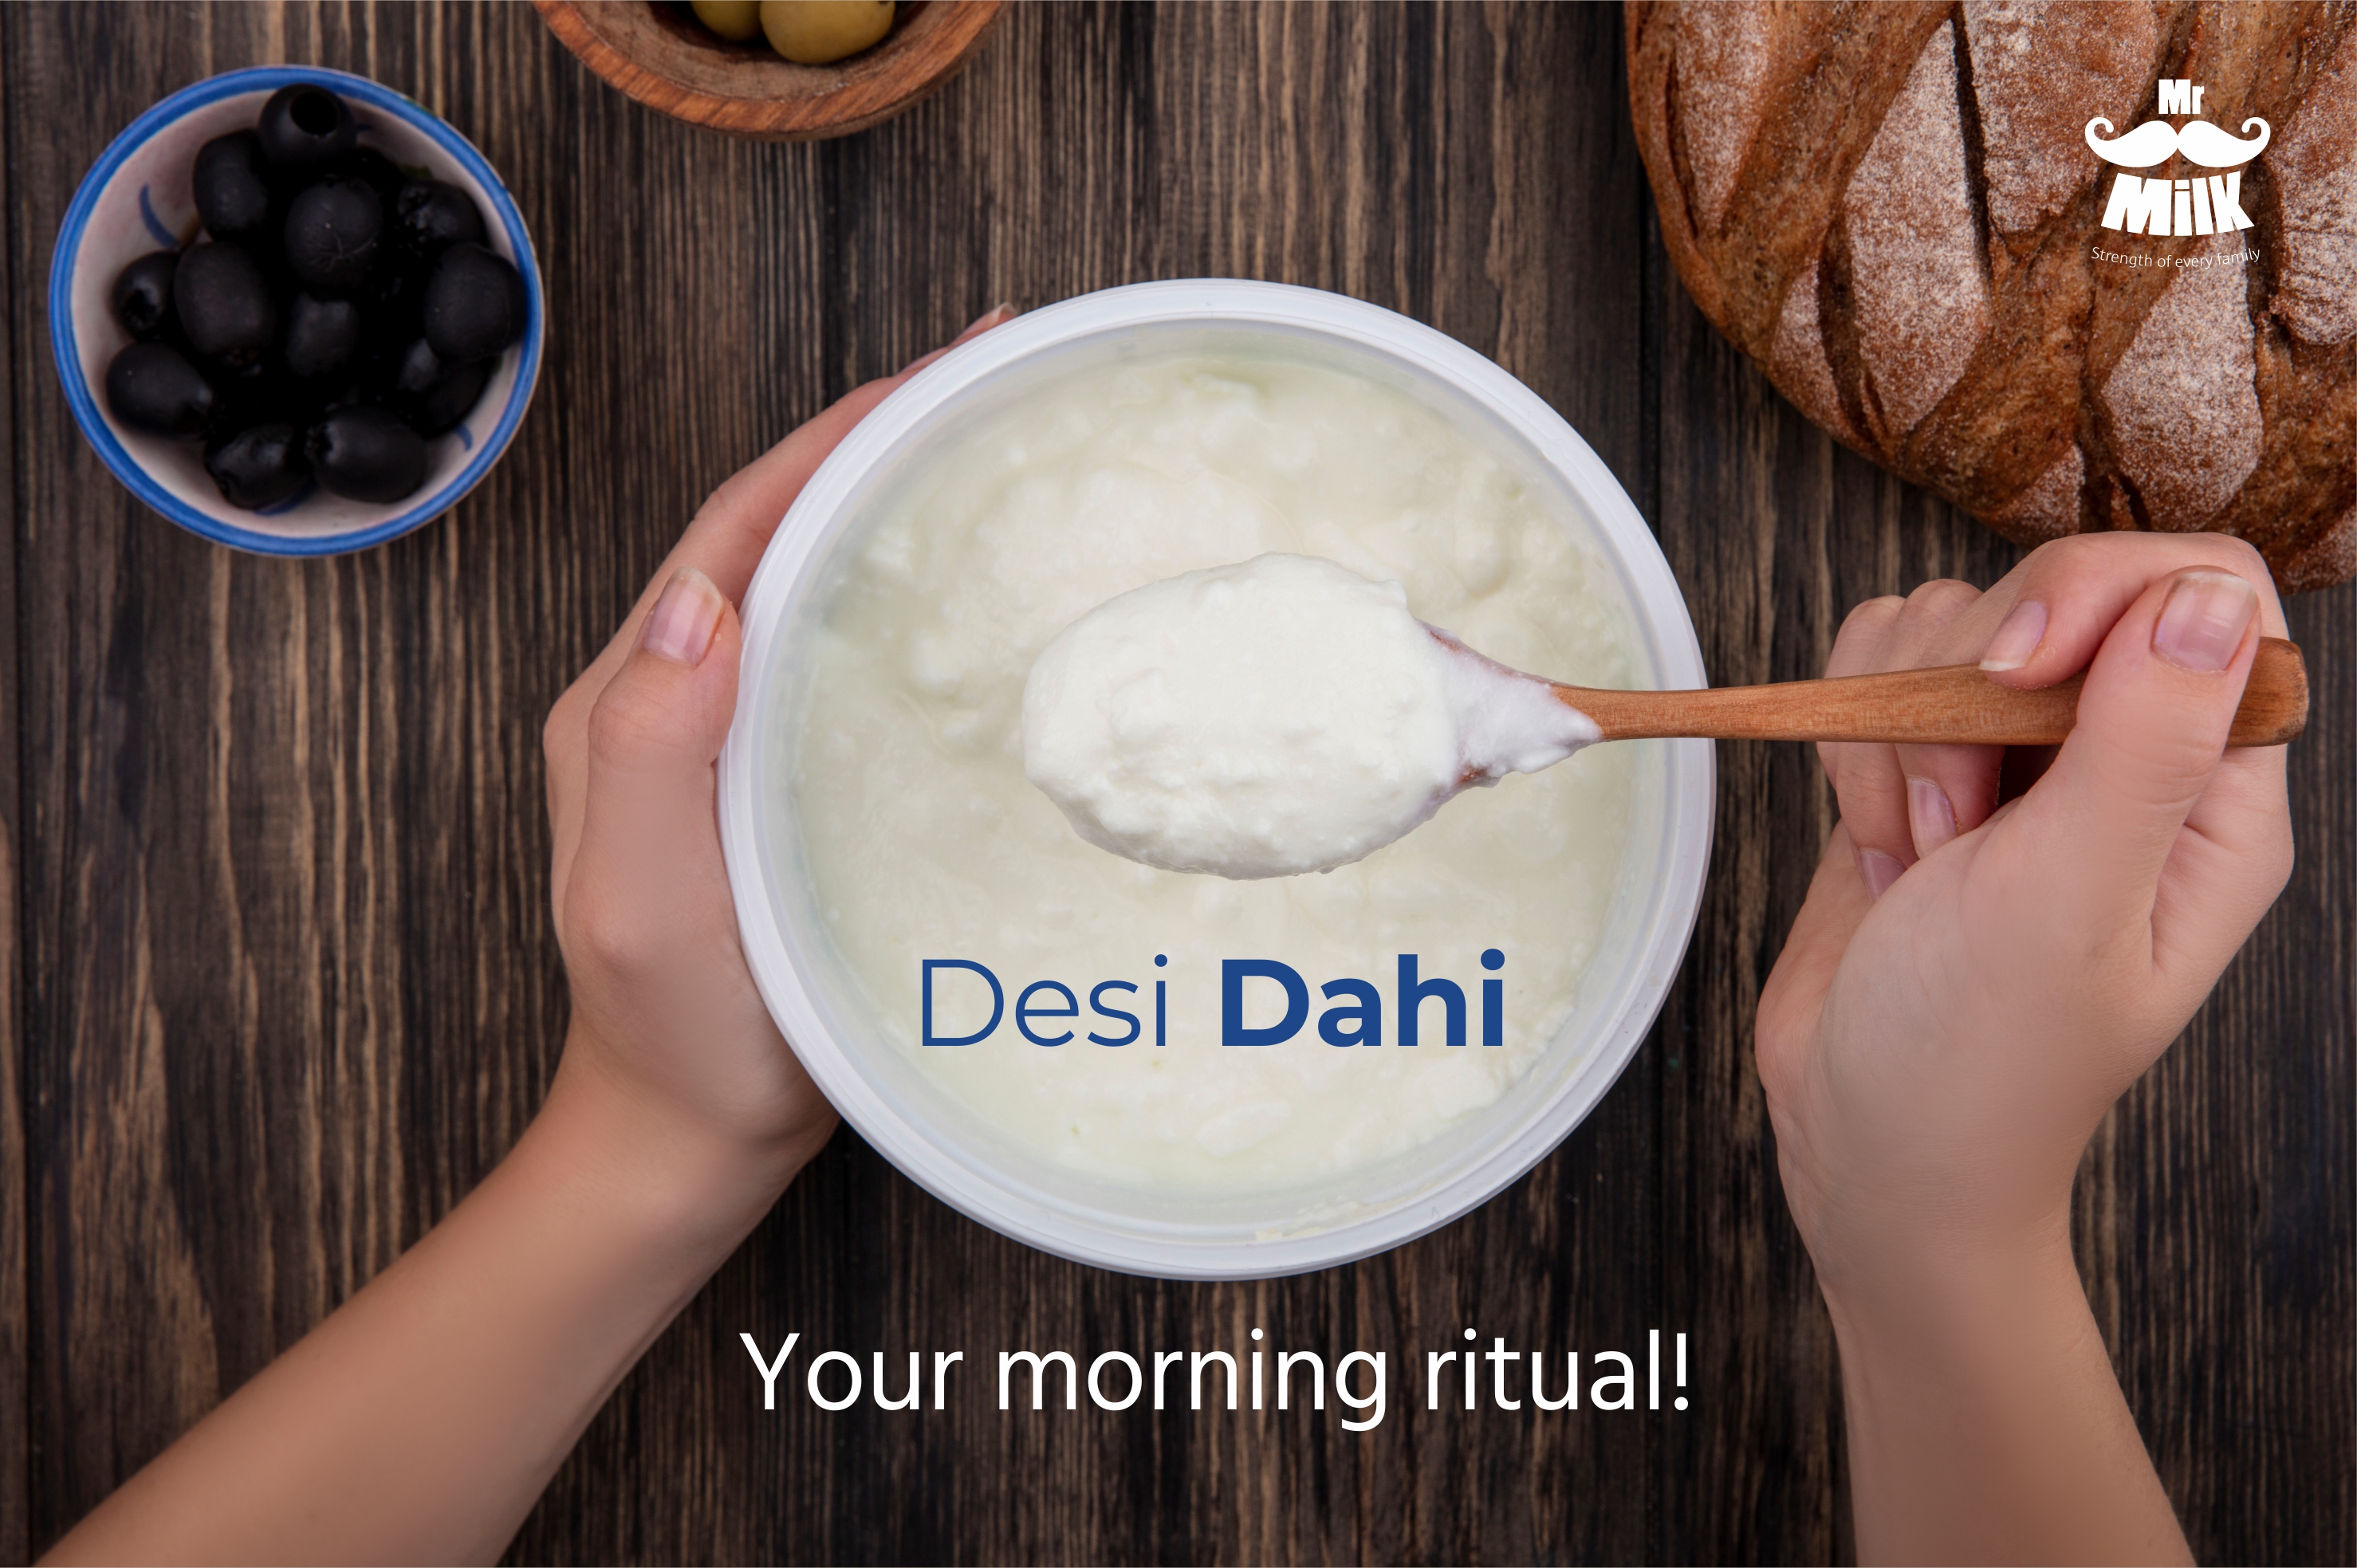 Desi Dahi – Your morning ritual!